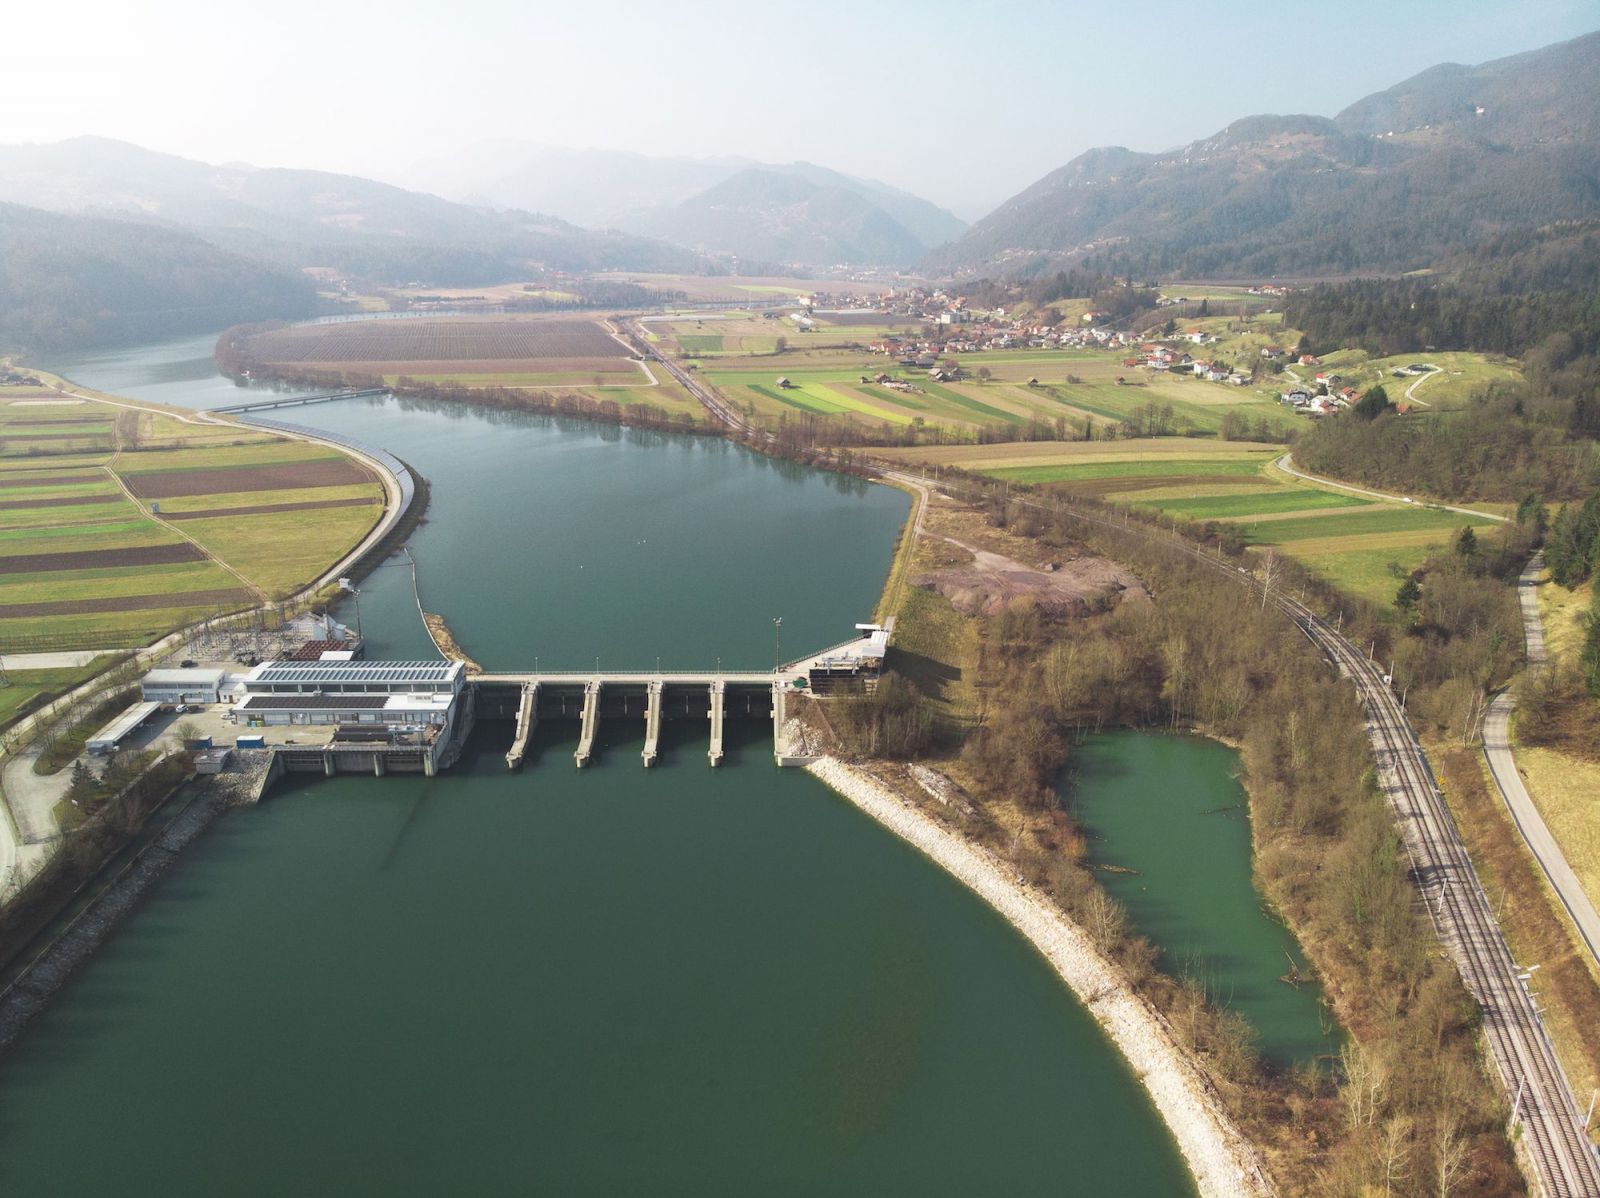 Một đập thủy điện làm chậm dòng chảy của một dòng sông ở Slovenia tạo ra năng lượng cho người dân địa phương